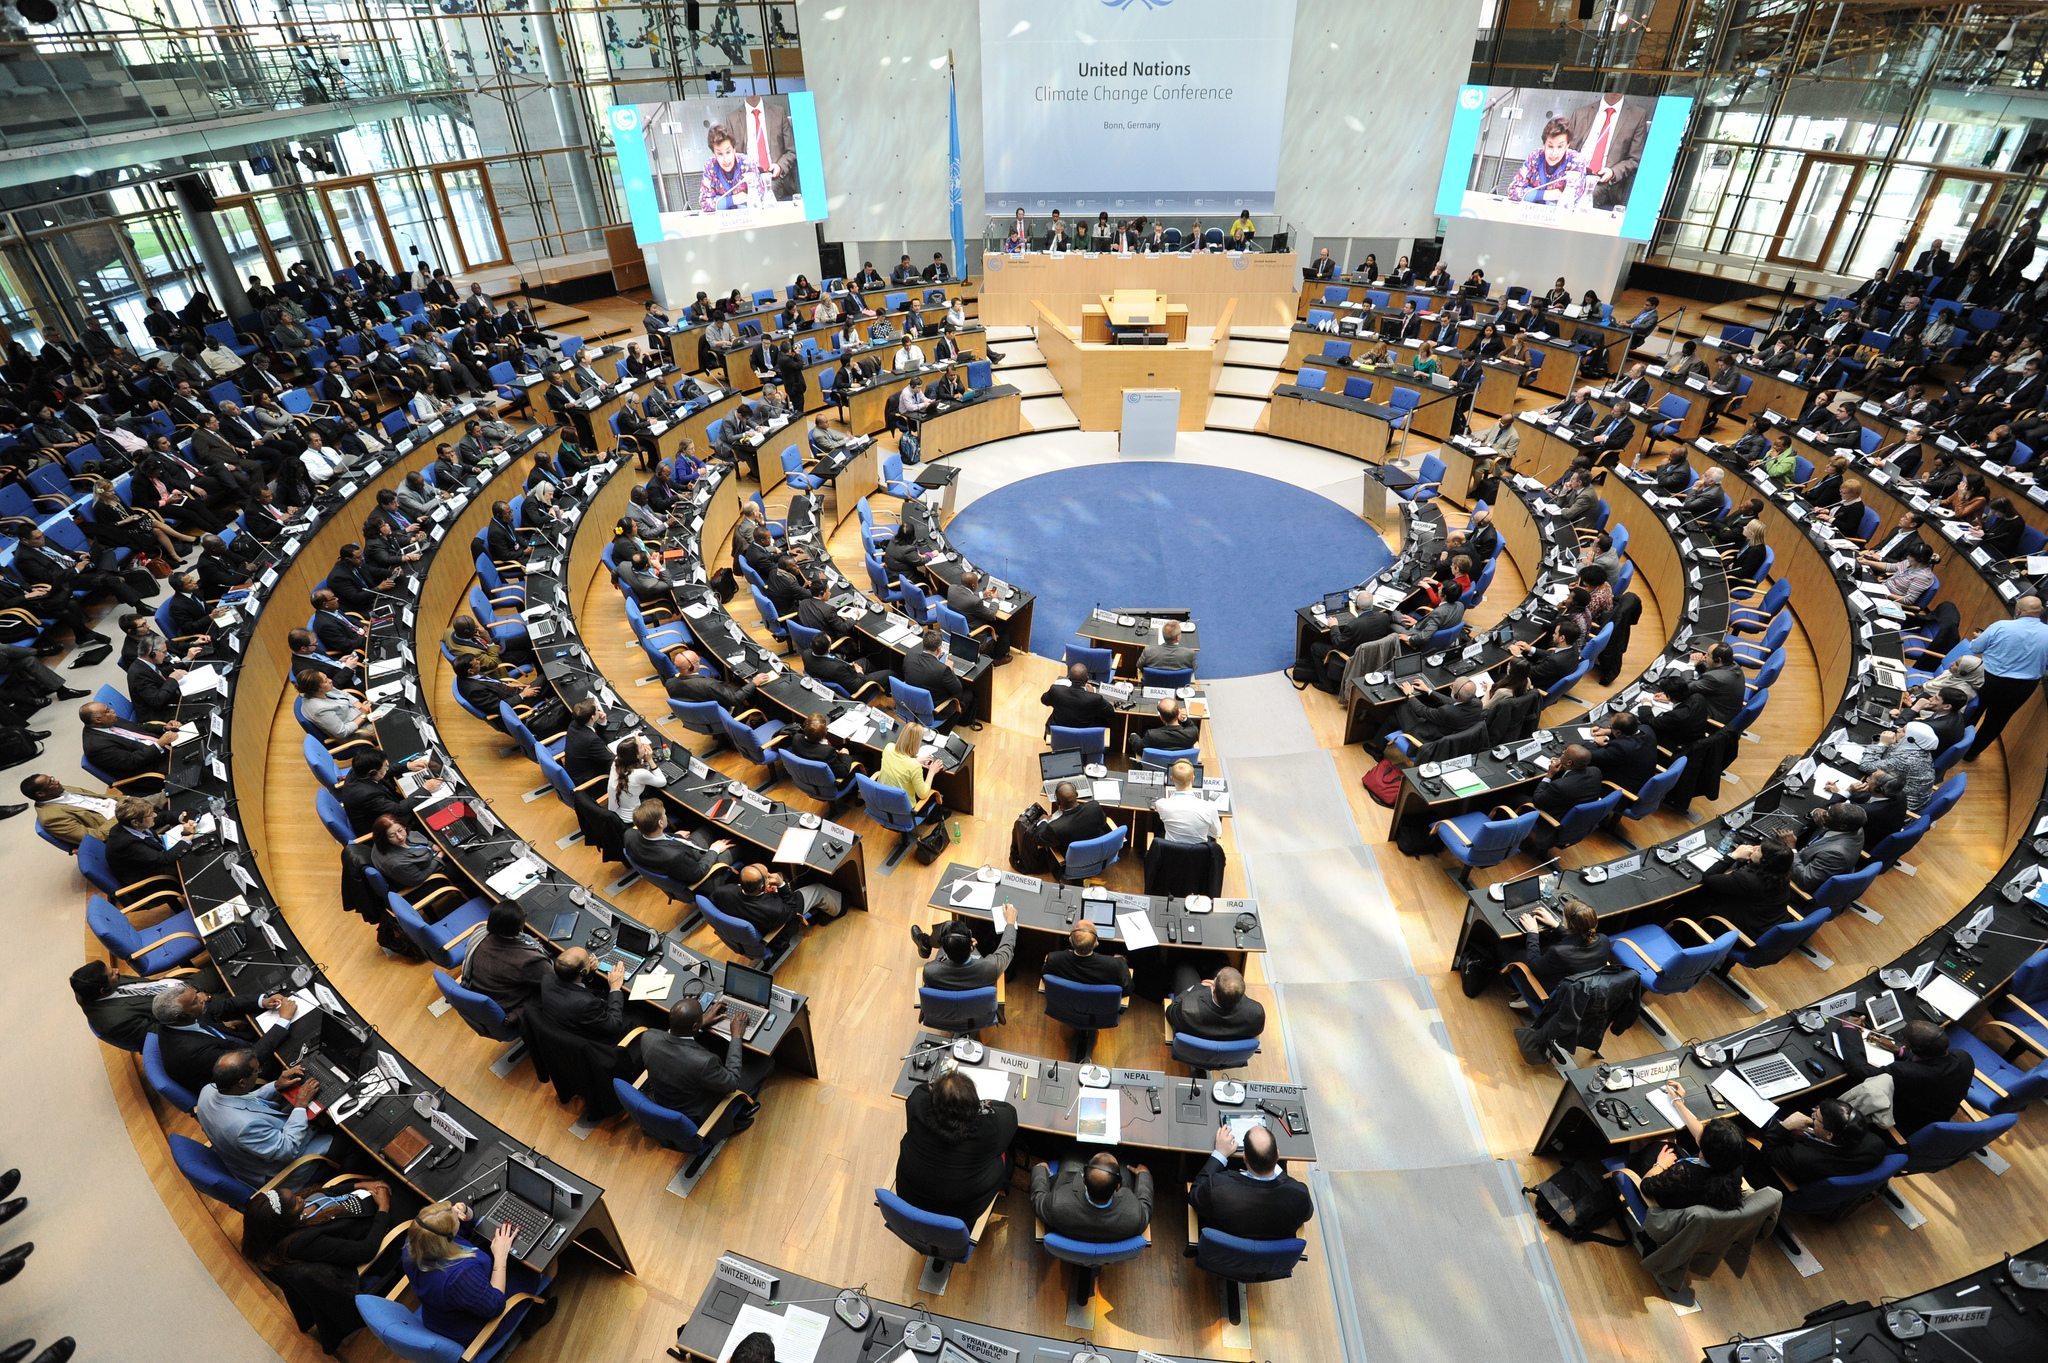 Bonn Climate Change Talks